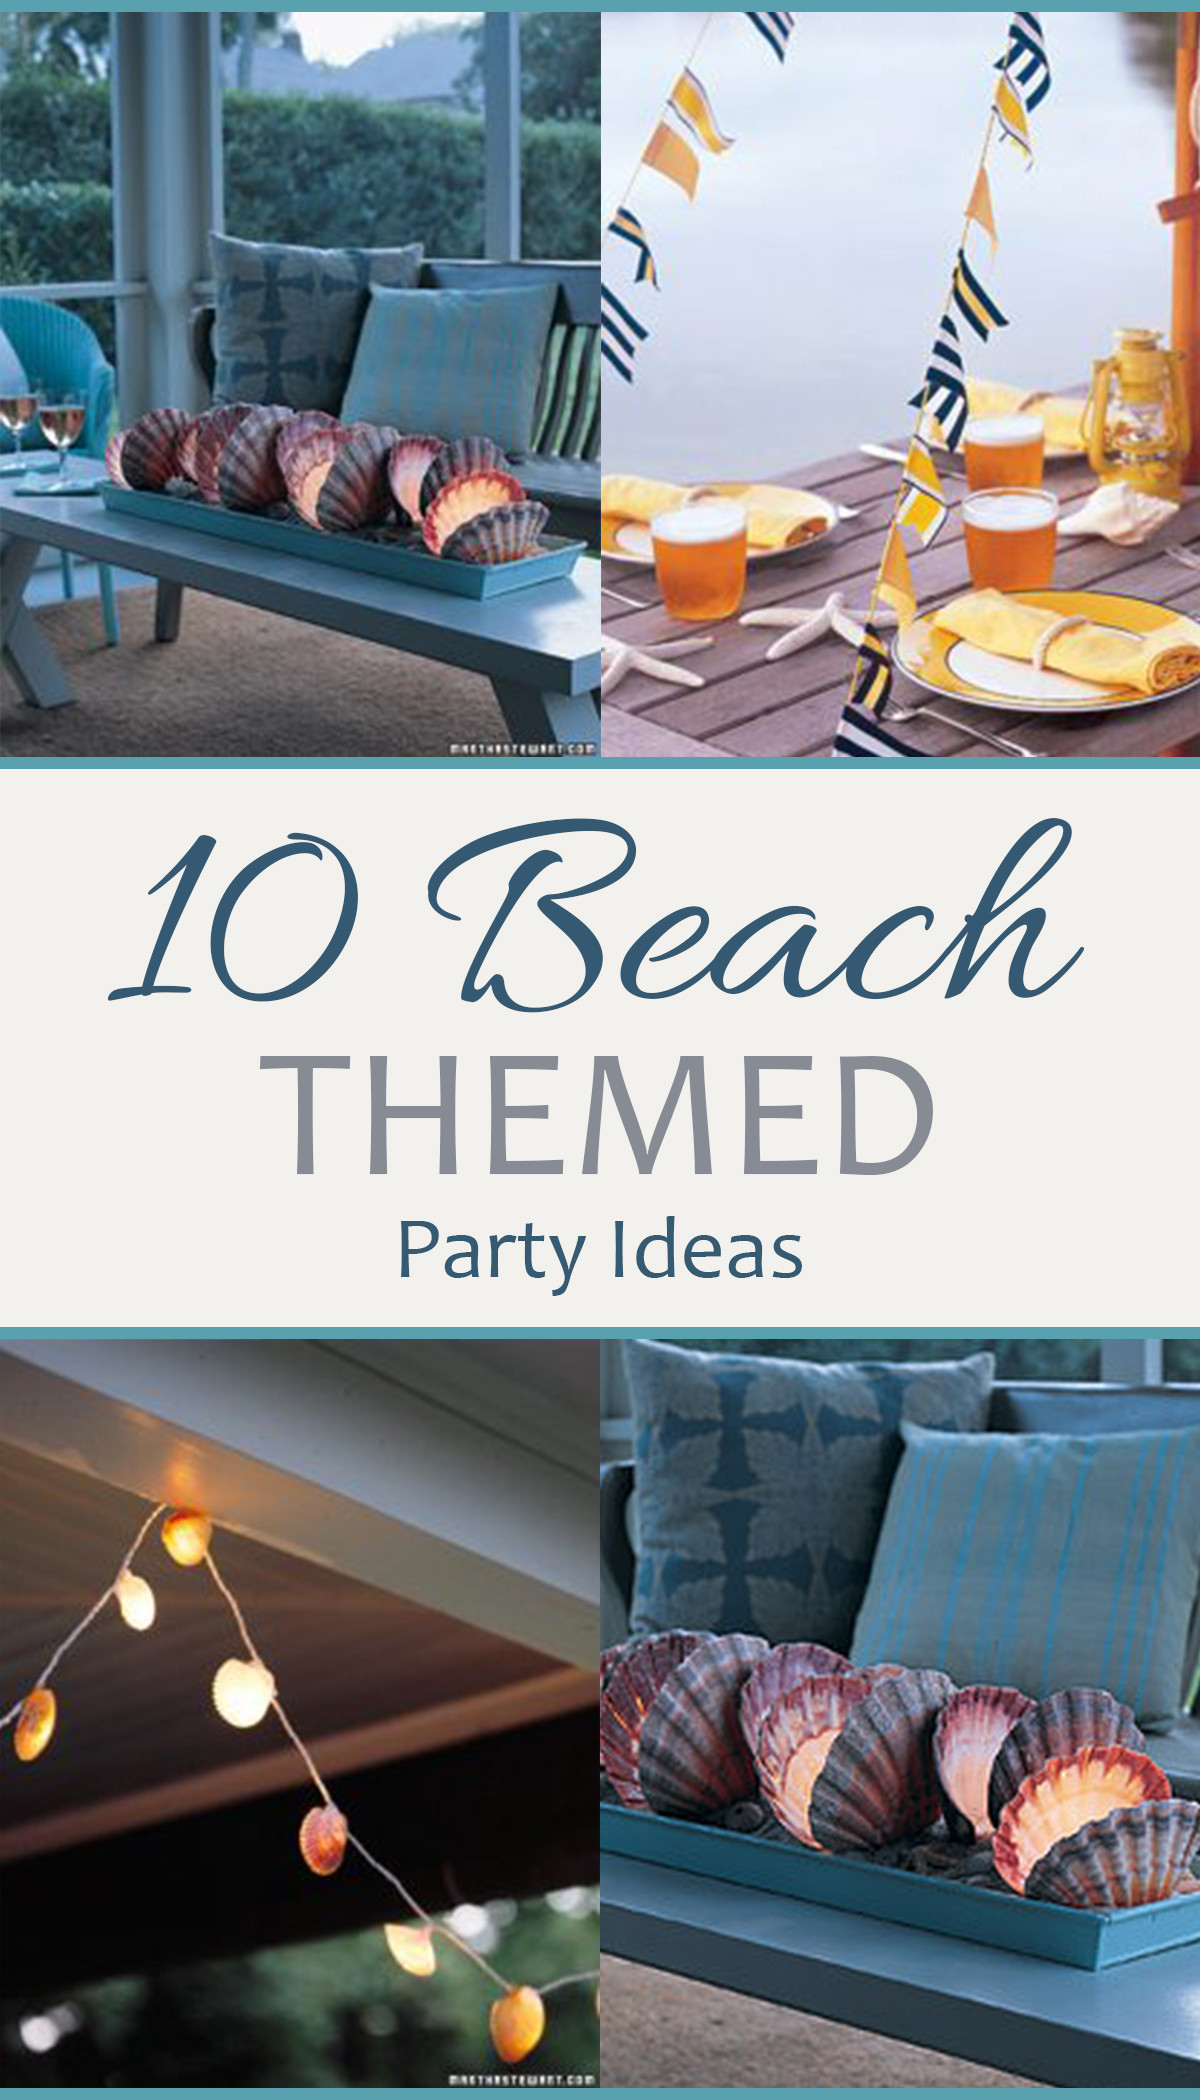 Beach Party Decorating Ideas
 10 Beach Themed Party Ideas